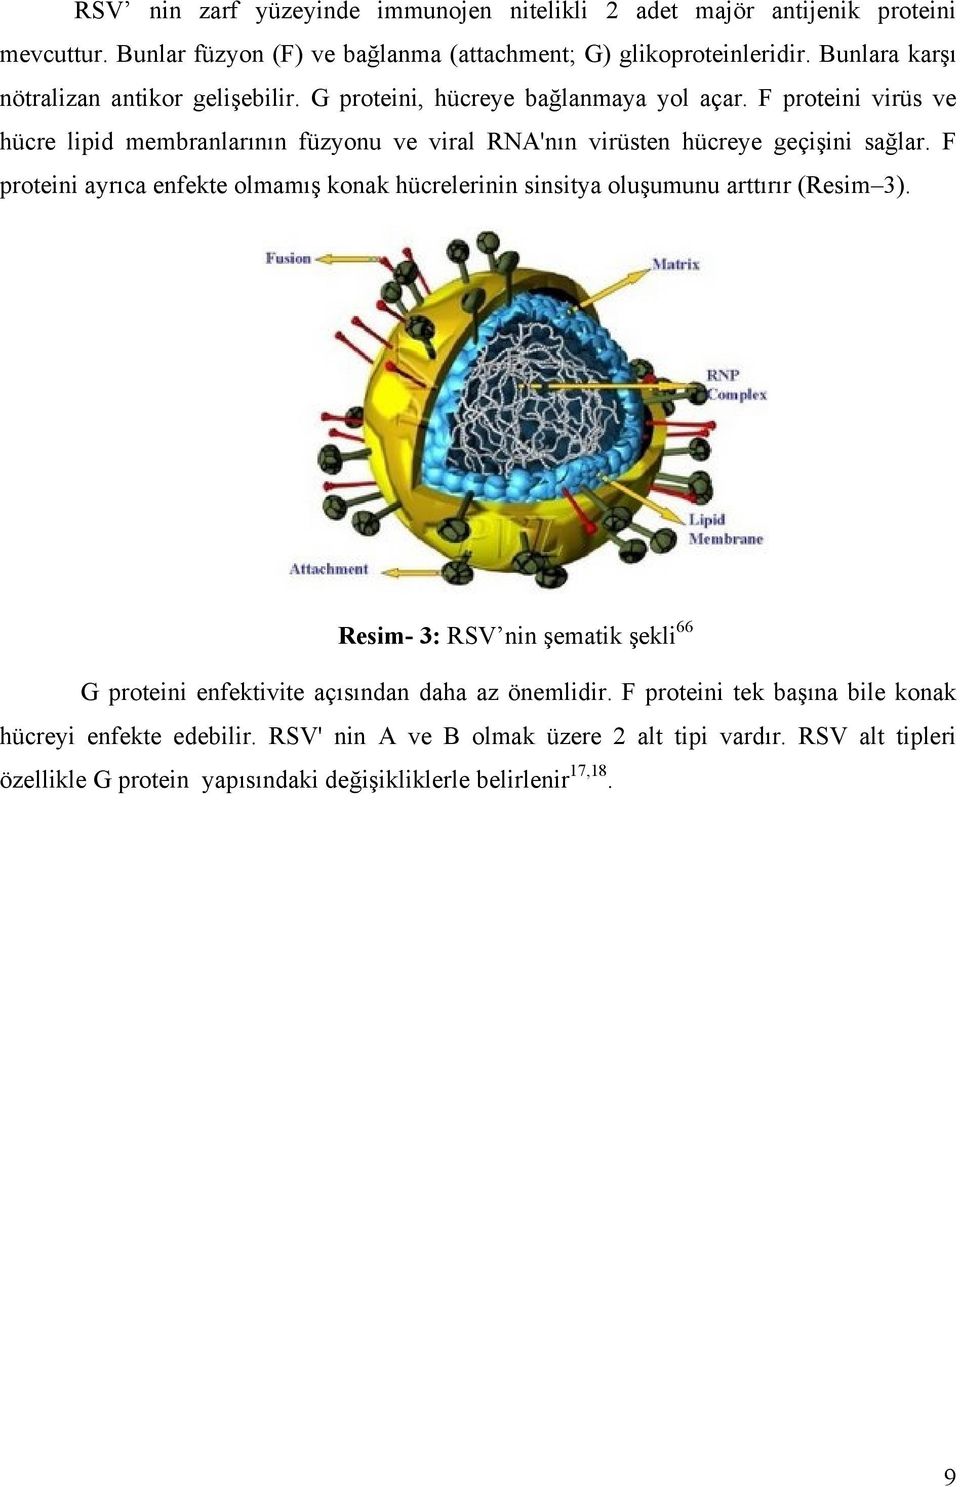 F proteini virüs ve hücre lipid membranlarının füzyonu ve viral RNA'nın virüsten hücreye geçişini sağlar.